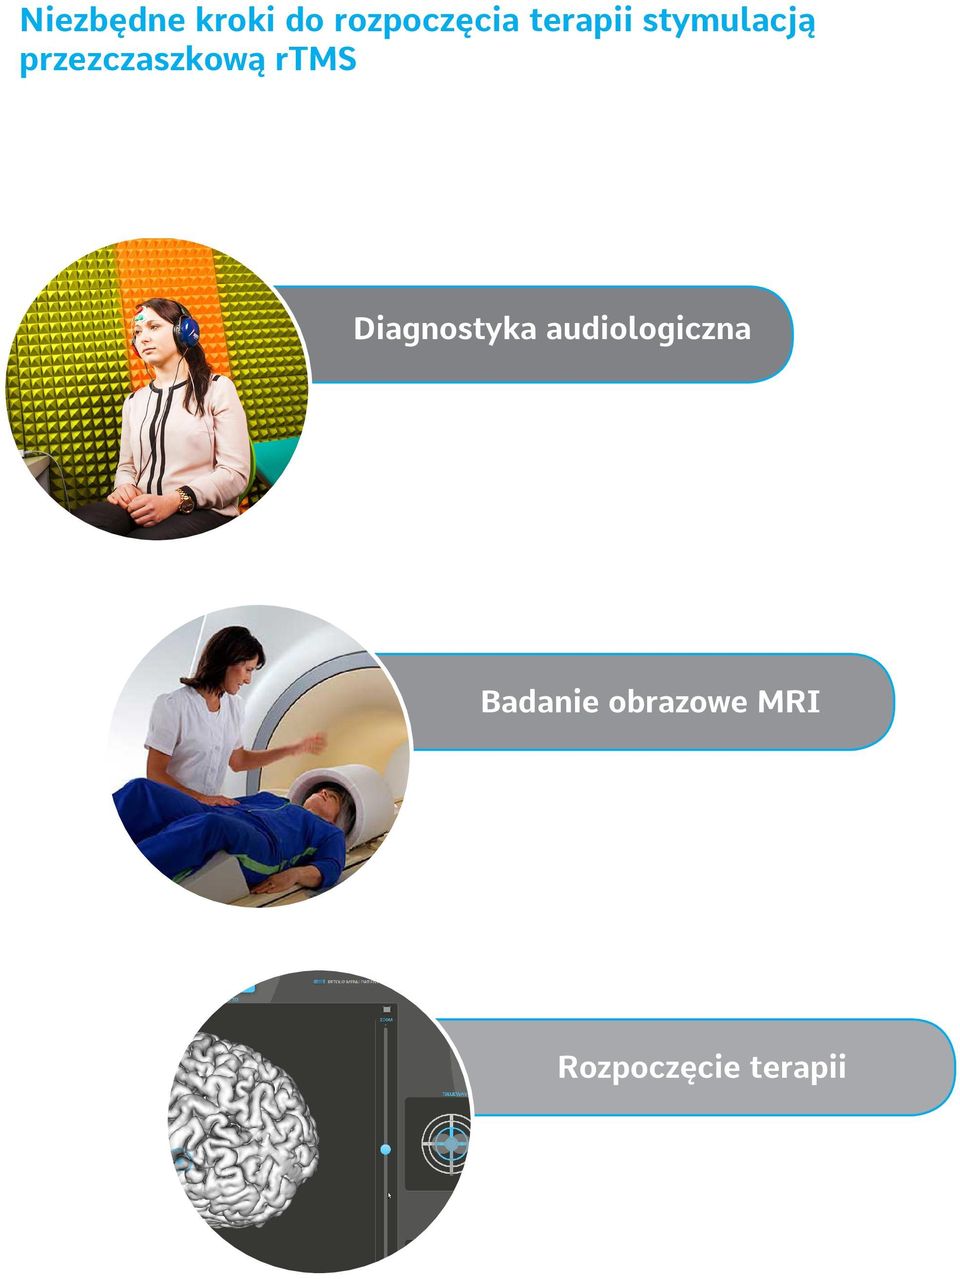 rtms Diagnostyka audiologiczna